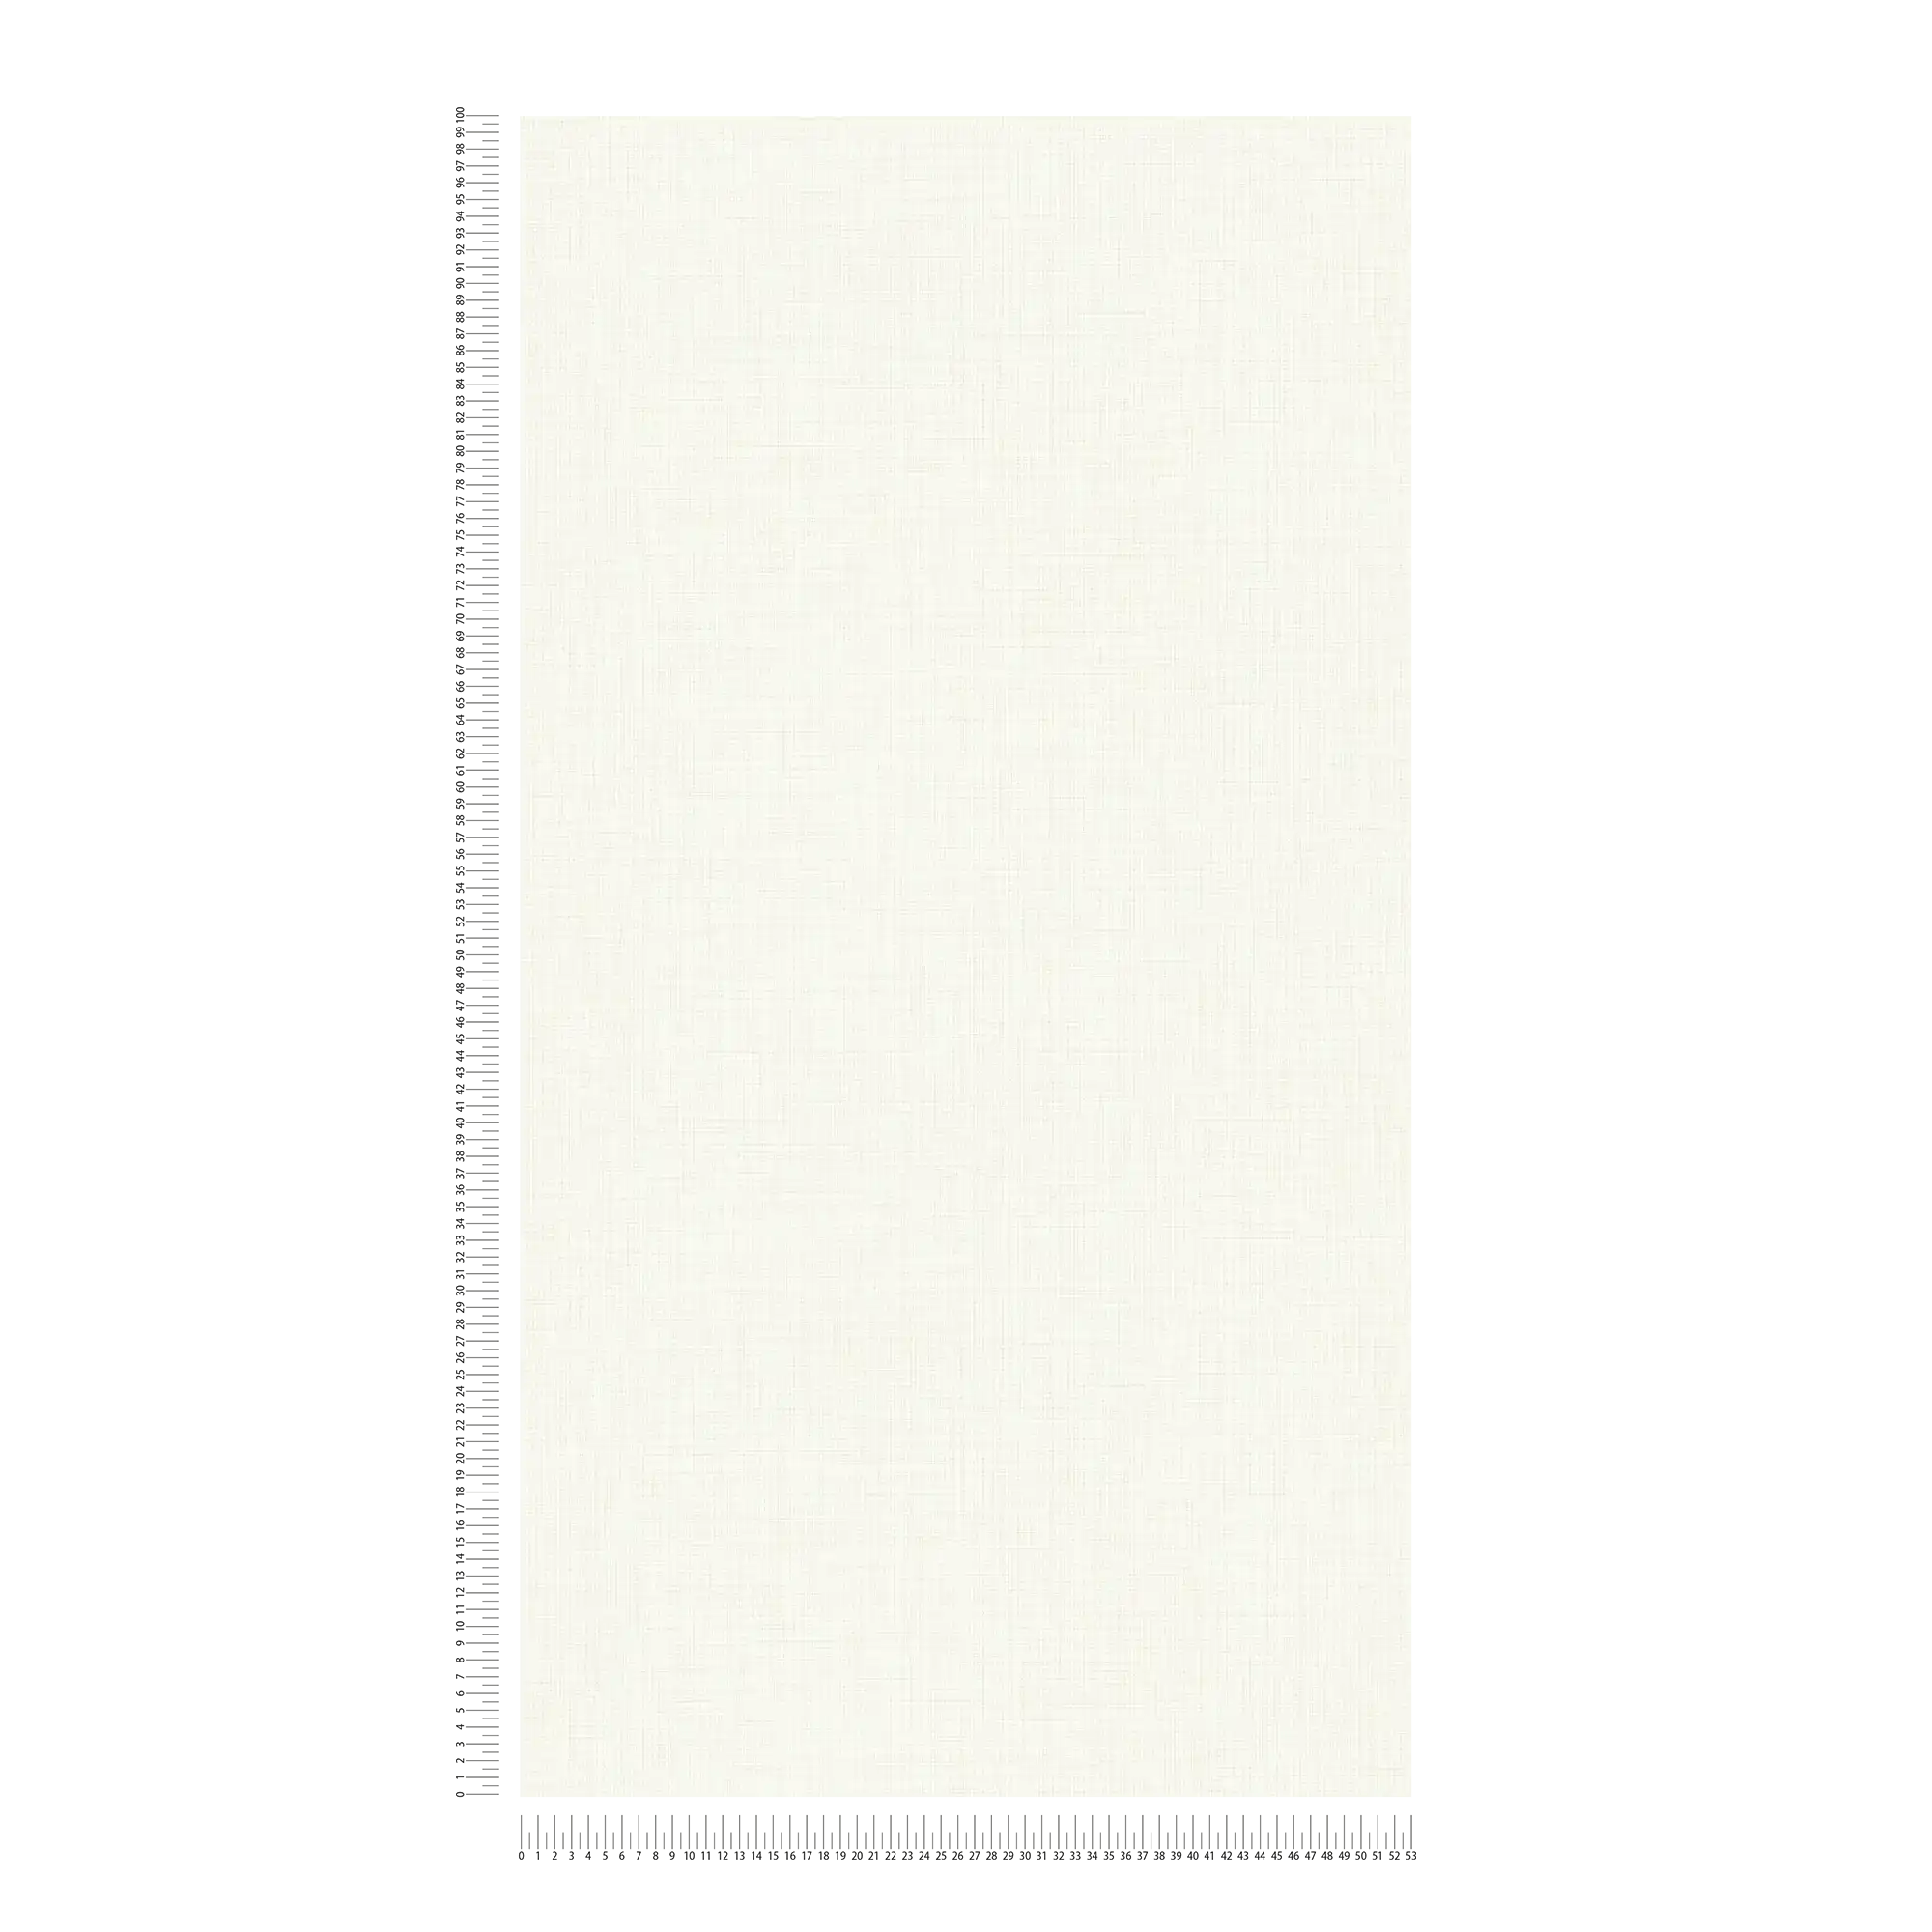             Carta da parati effetto lino bianco crema di MICHALSKY
        